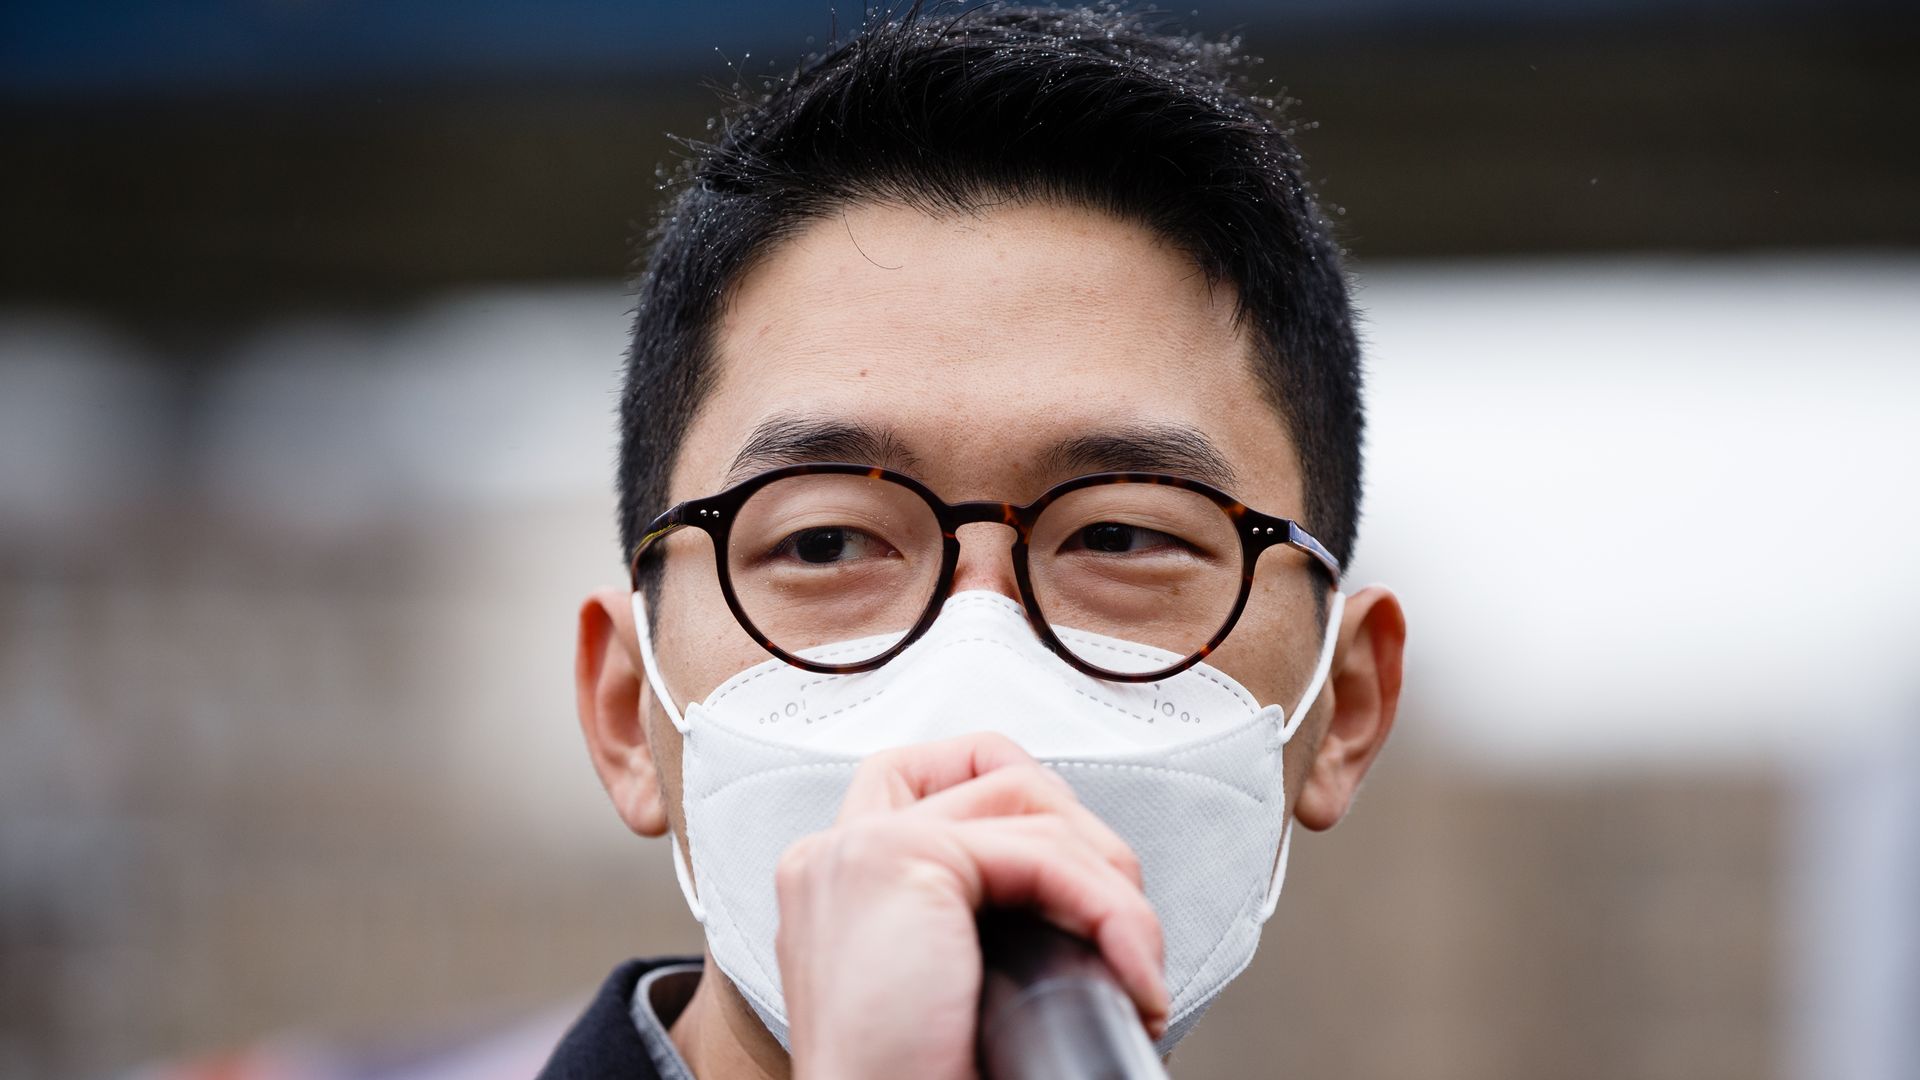 Hong Kong pro-democracy activist Nathan Law 